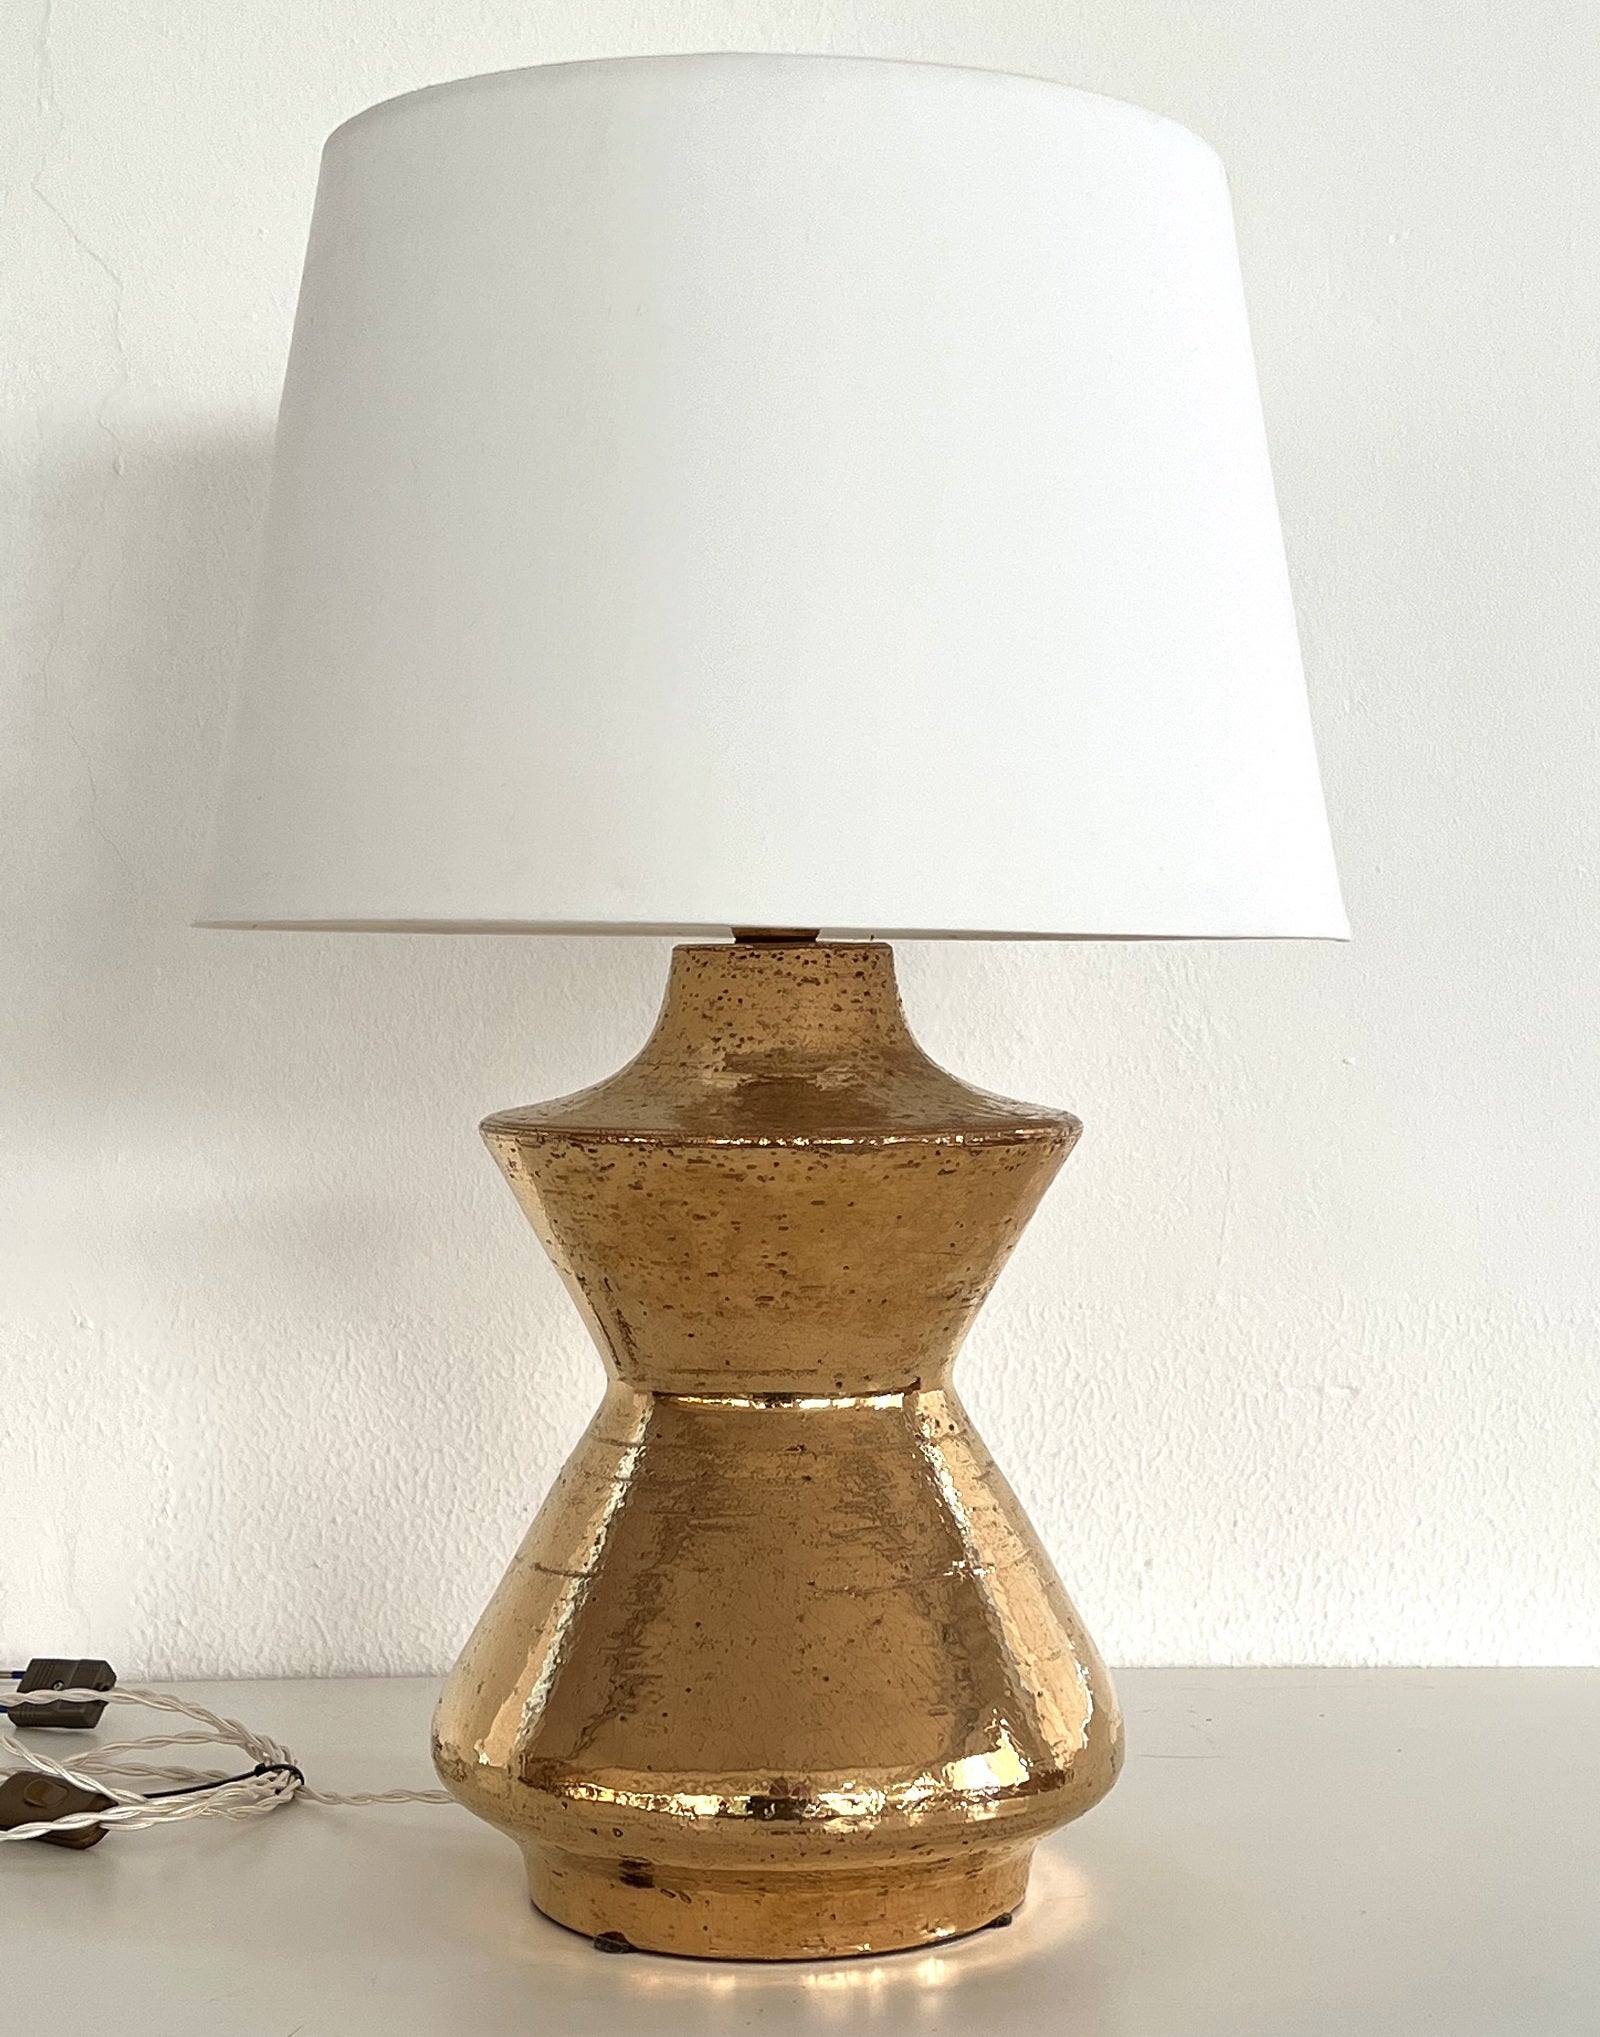 Wunderschöne glänzende Keramik-Tischlampe, entworfen und hergestellt von Aldo Londi in den 1970er Jahren für Bitossi.
Dieser schwere, organische Keramikkörper ist in goldener Metallic-Glasur gefertigt und ein schöner Blickfang.
Es ist in wunderbarem